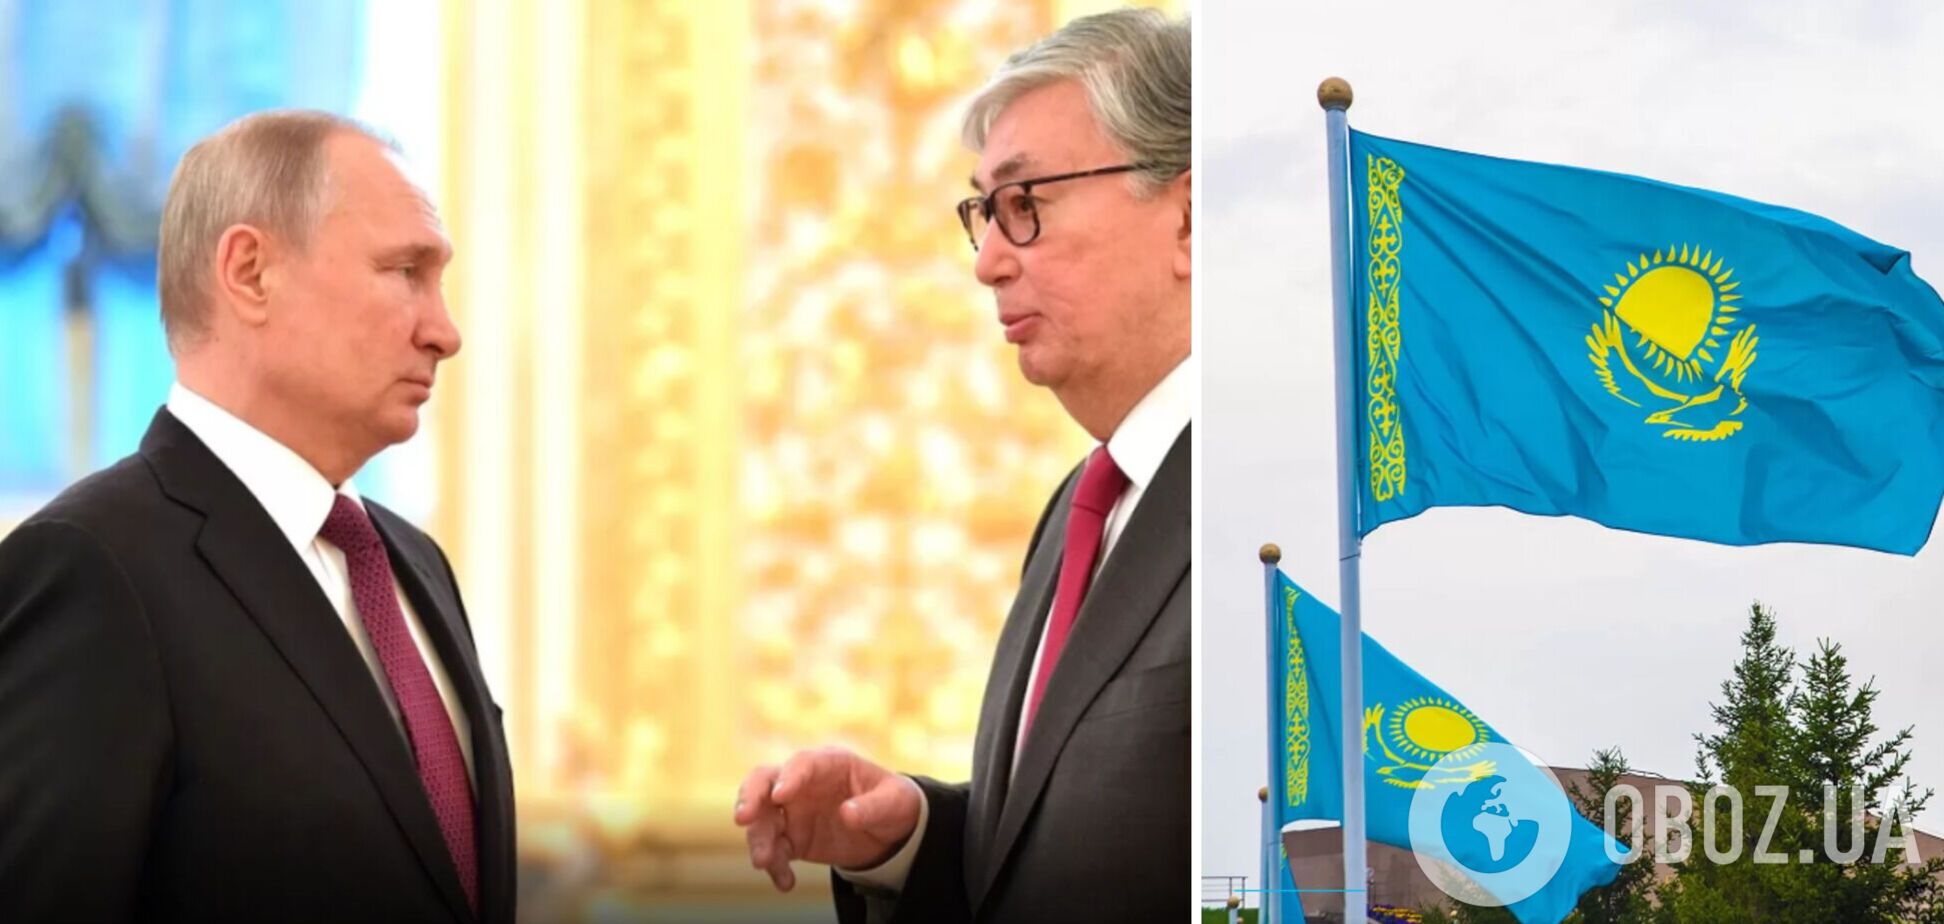 СМИ: Казахстан – союзник врага, но может помочь украинской борьбе против Путина